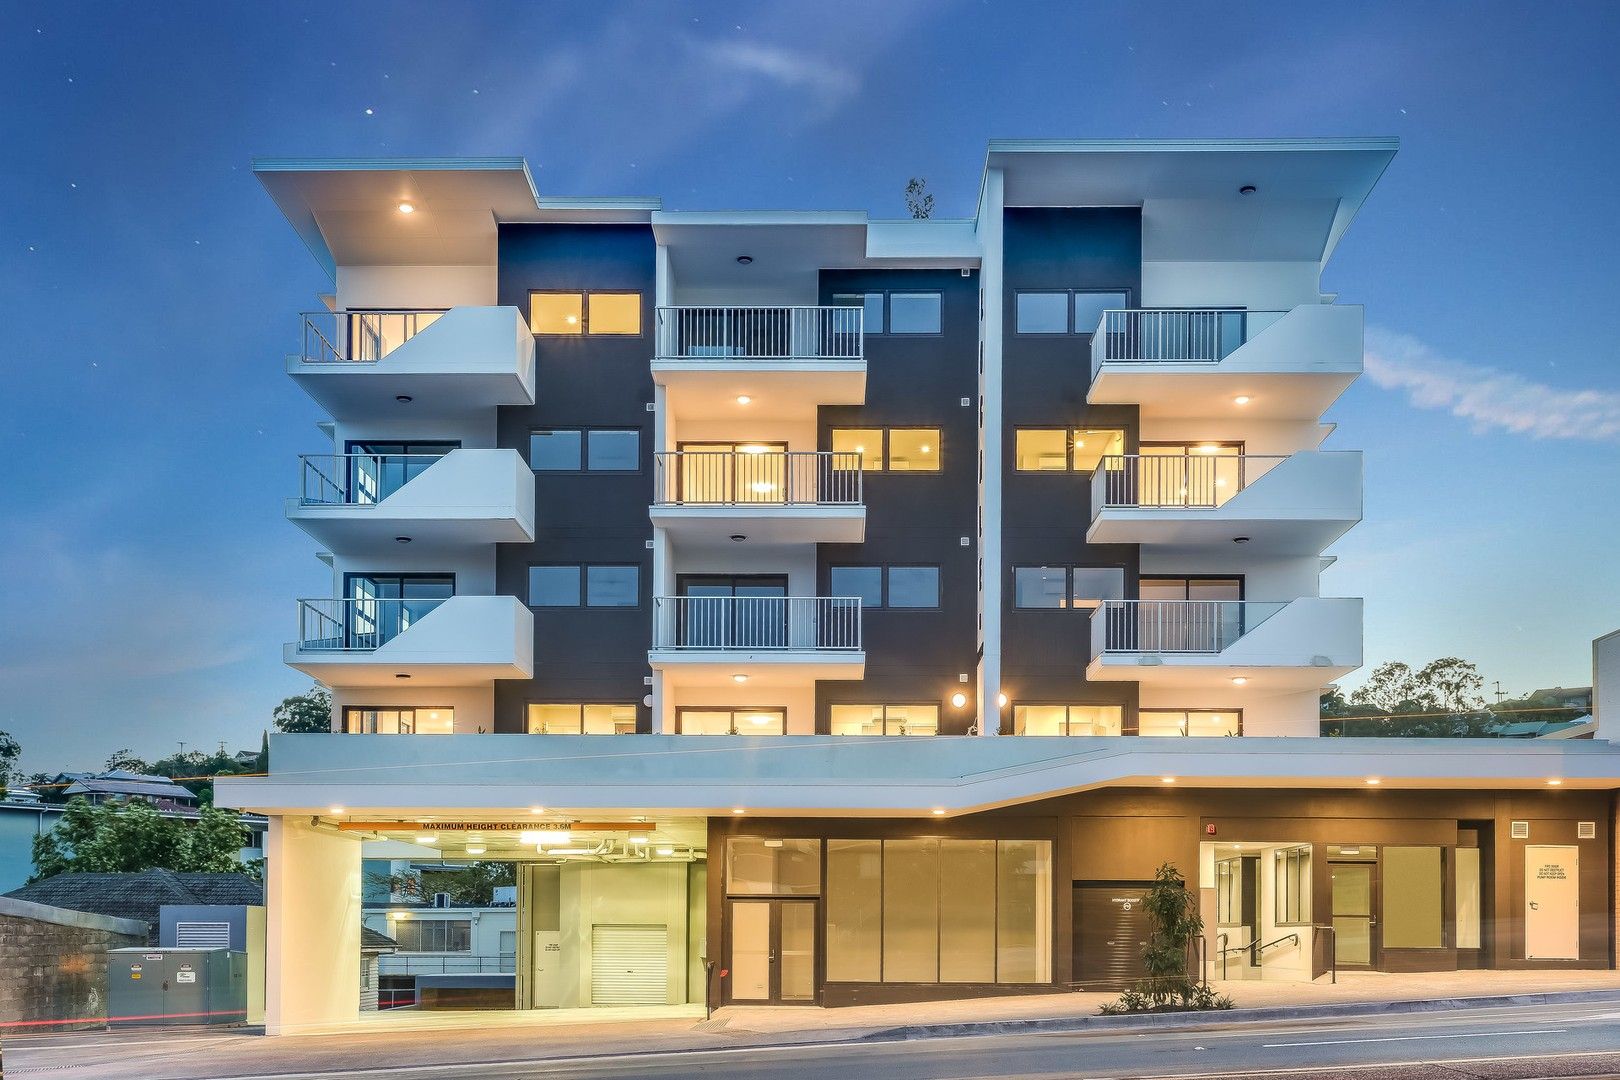 2 bedrooms Apartment / Unit / Flat in 452 Enoggera Road ALDERLEY QLD, 4051